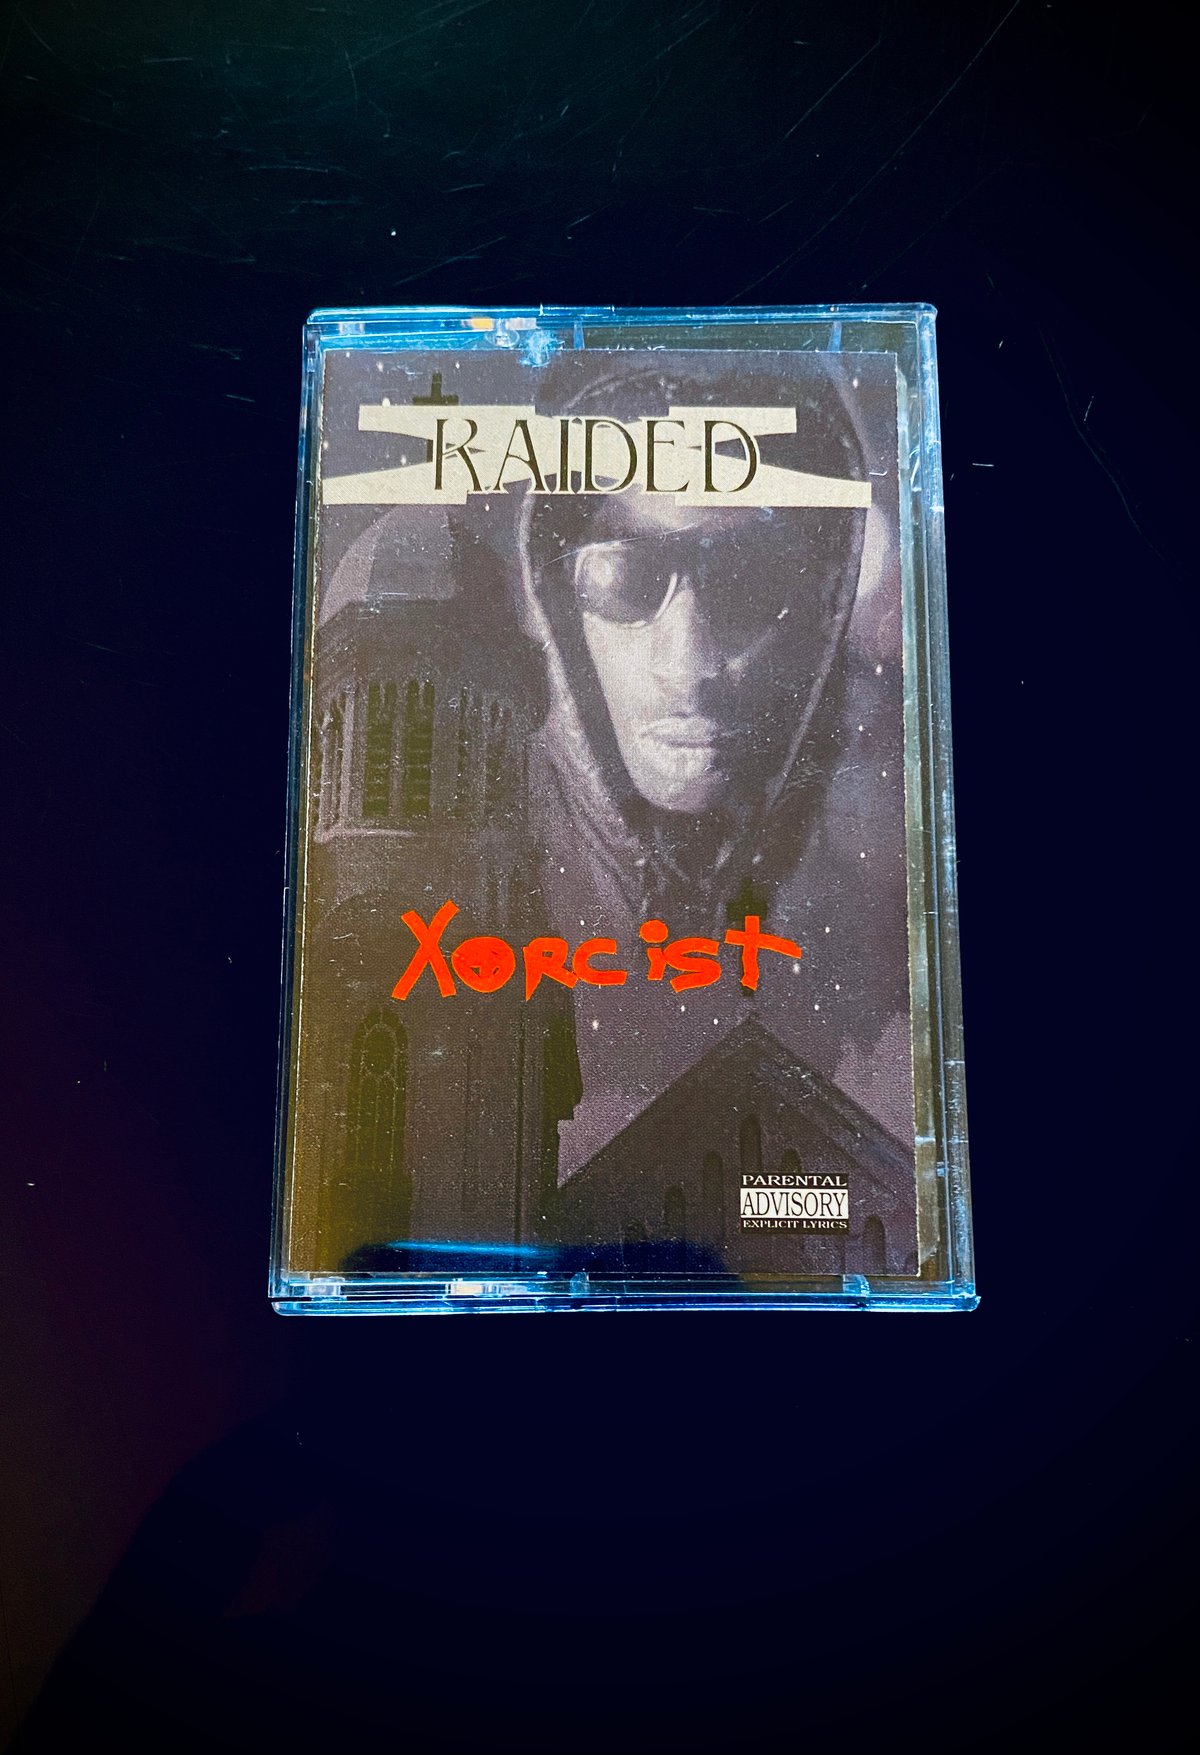 Image of X-Raided “Xorcist”